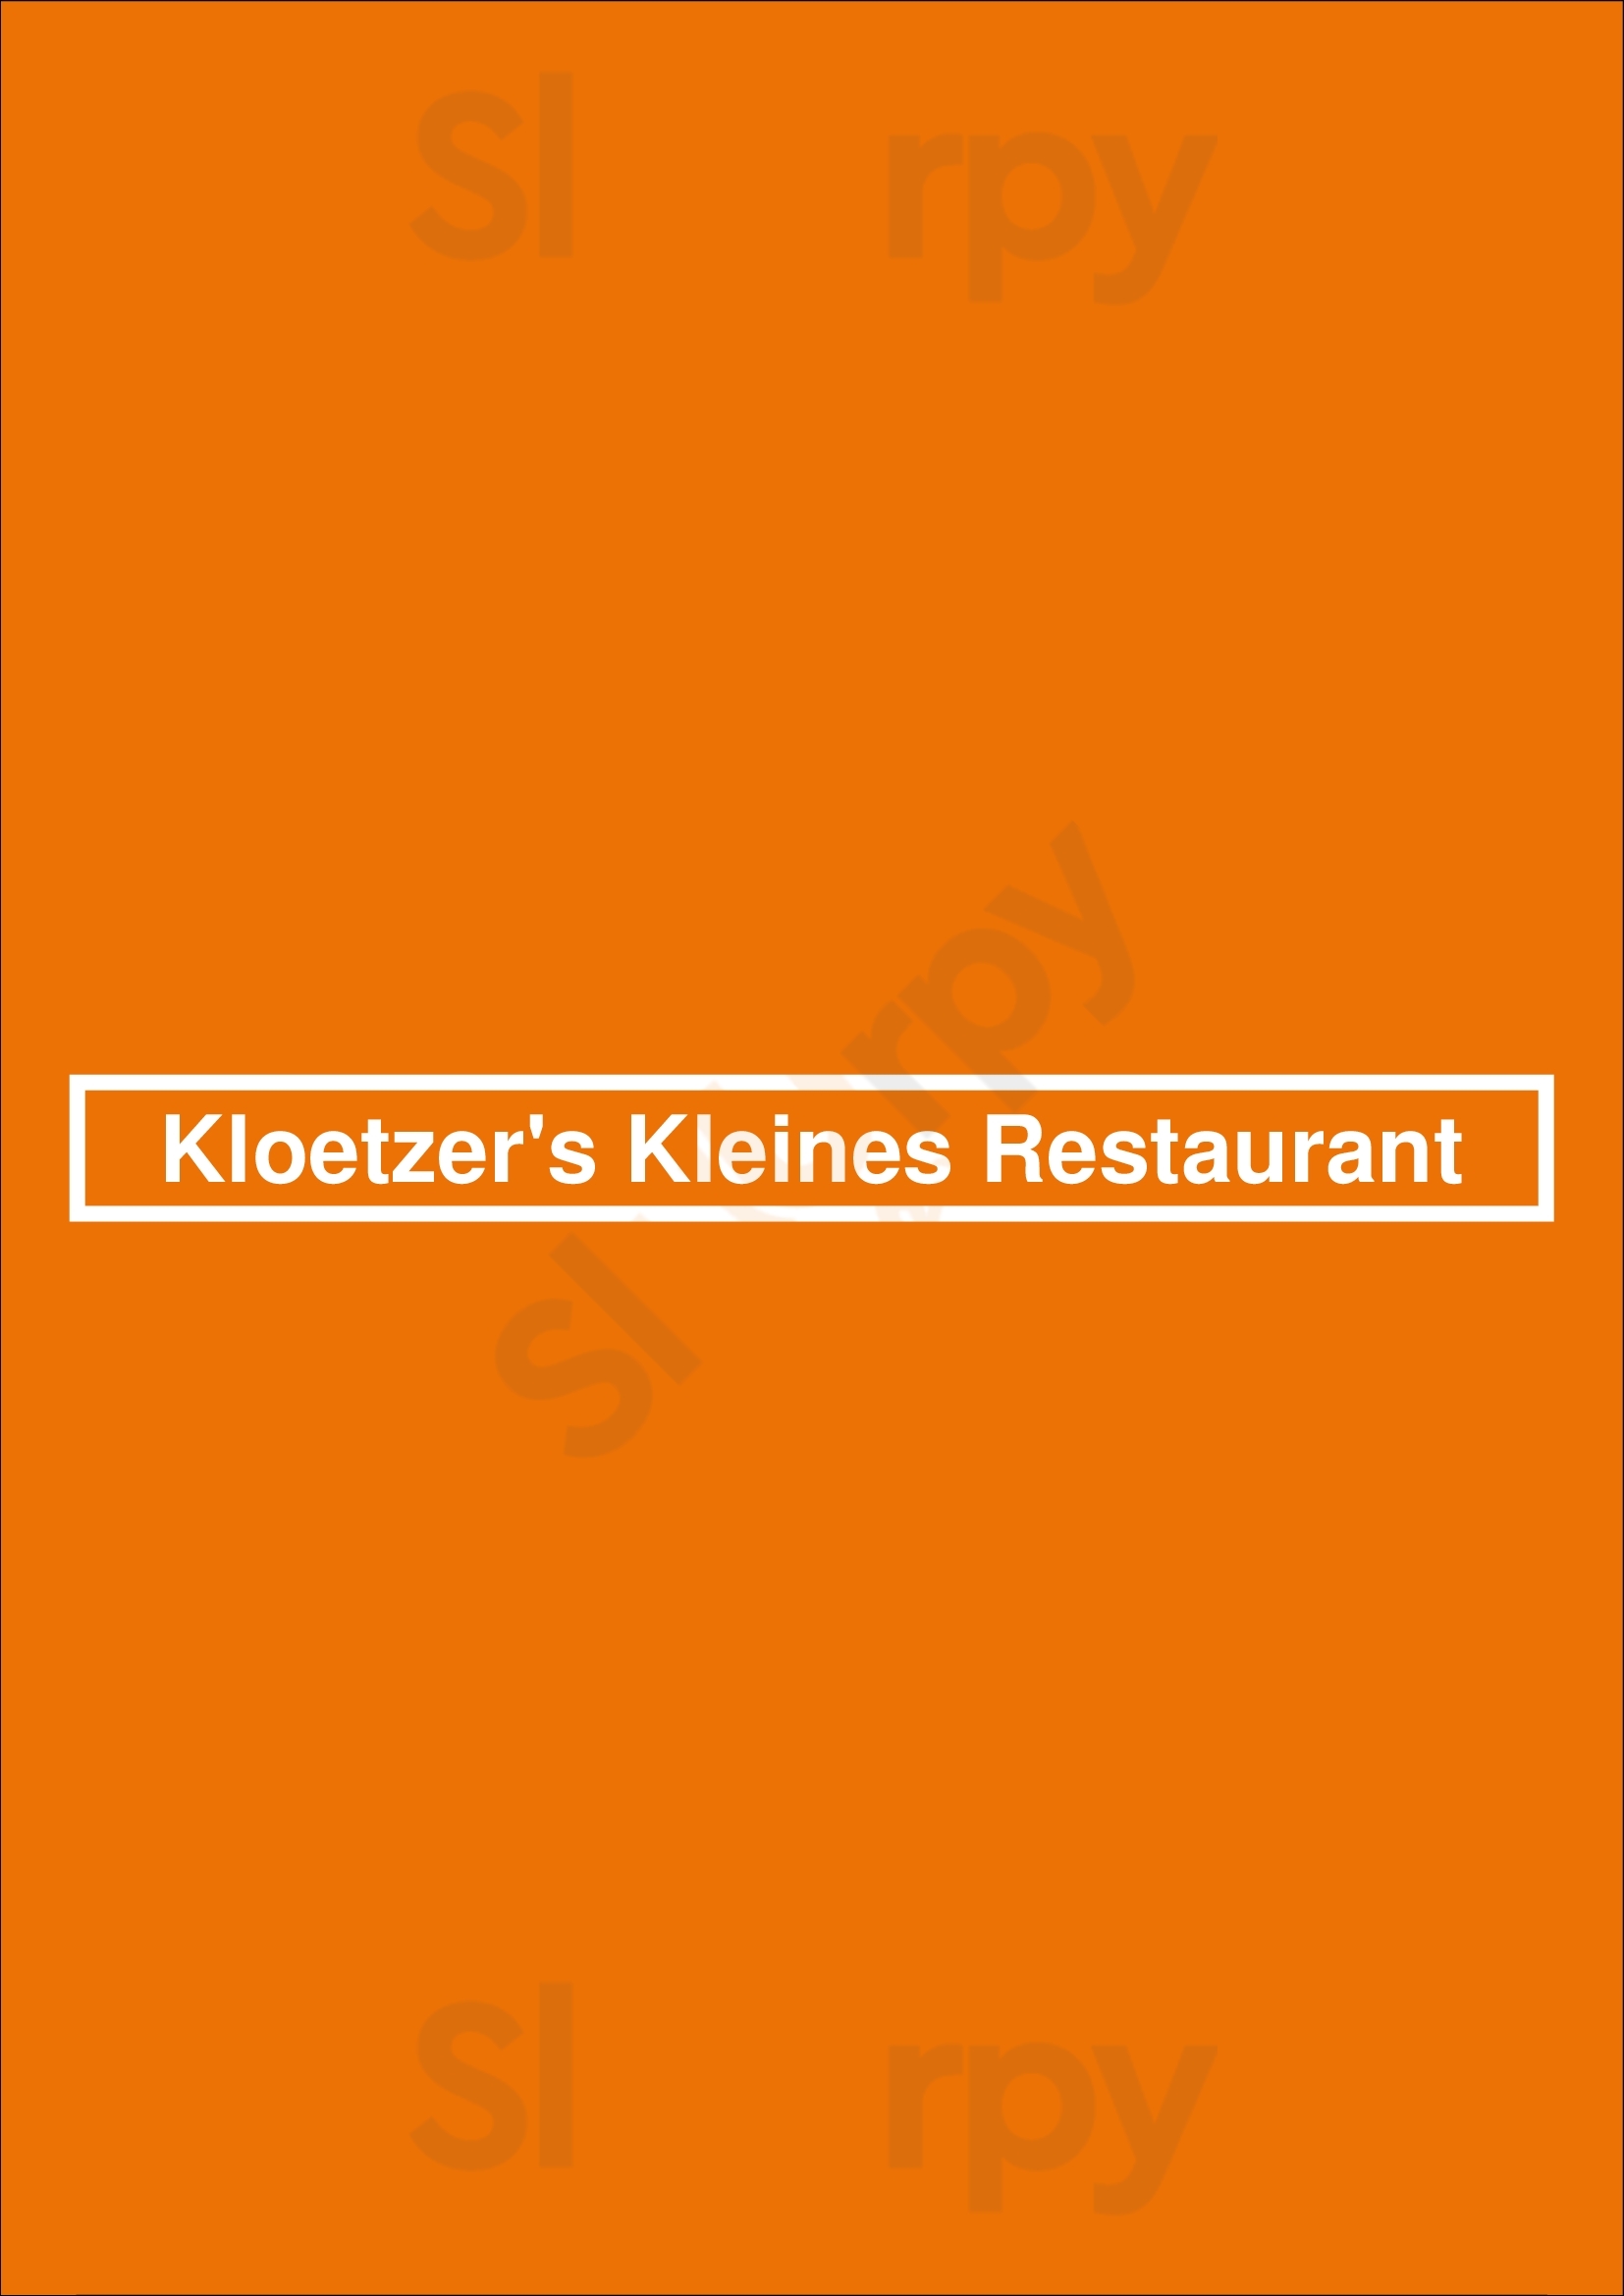 Klötzer's Restaurant Bielefeld Menu - 1